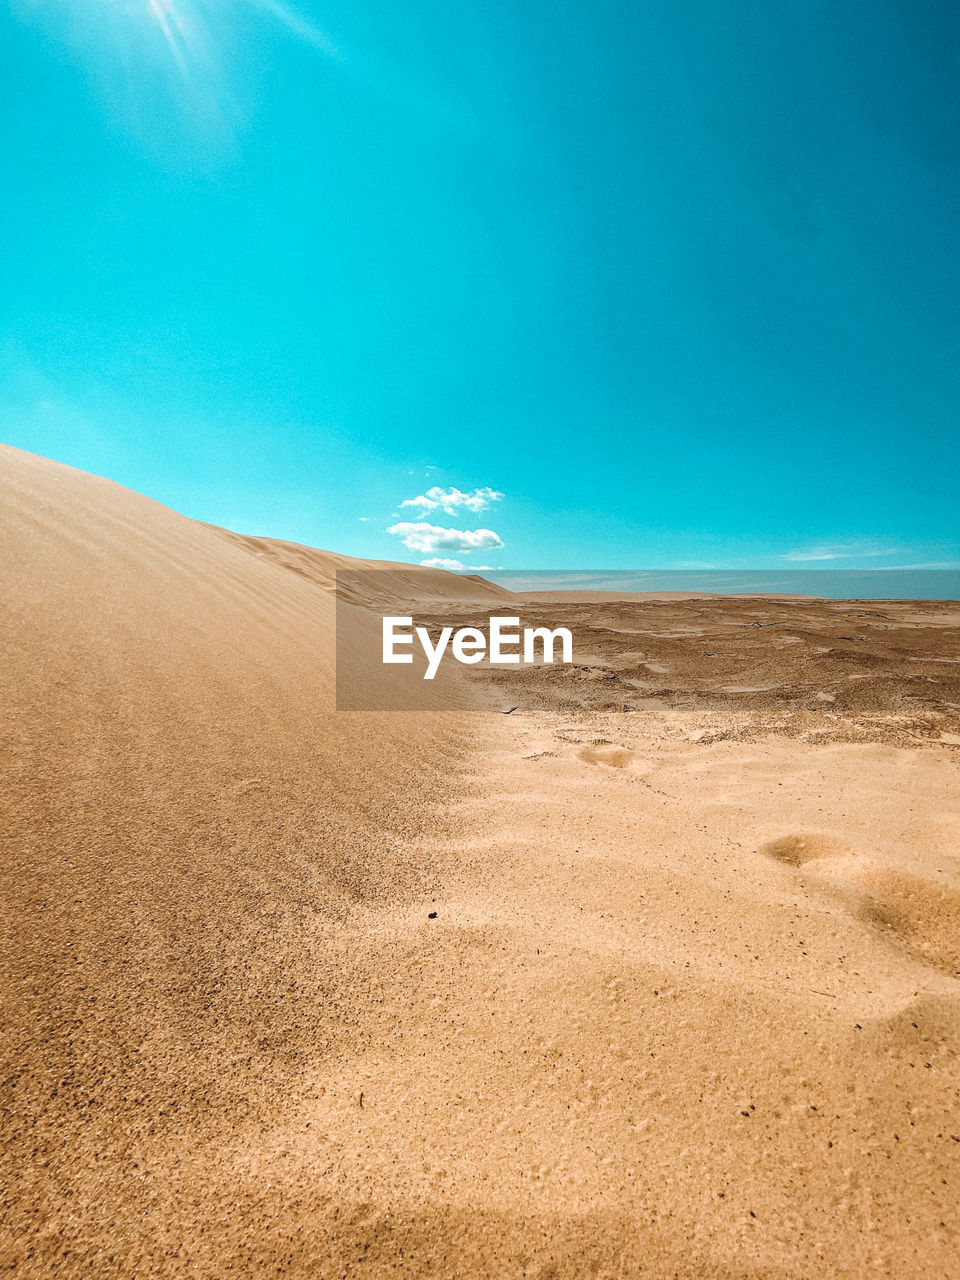 Sand dunes in desert against blue sky